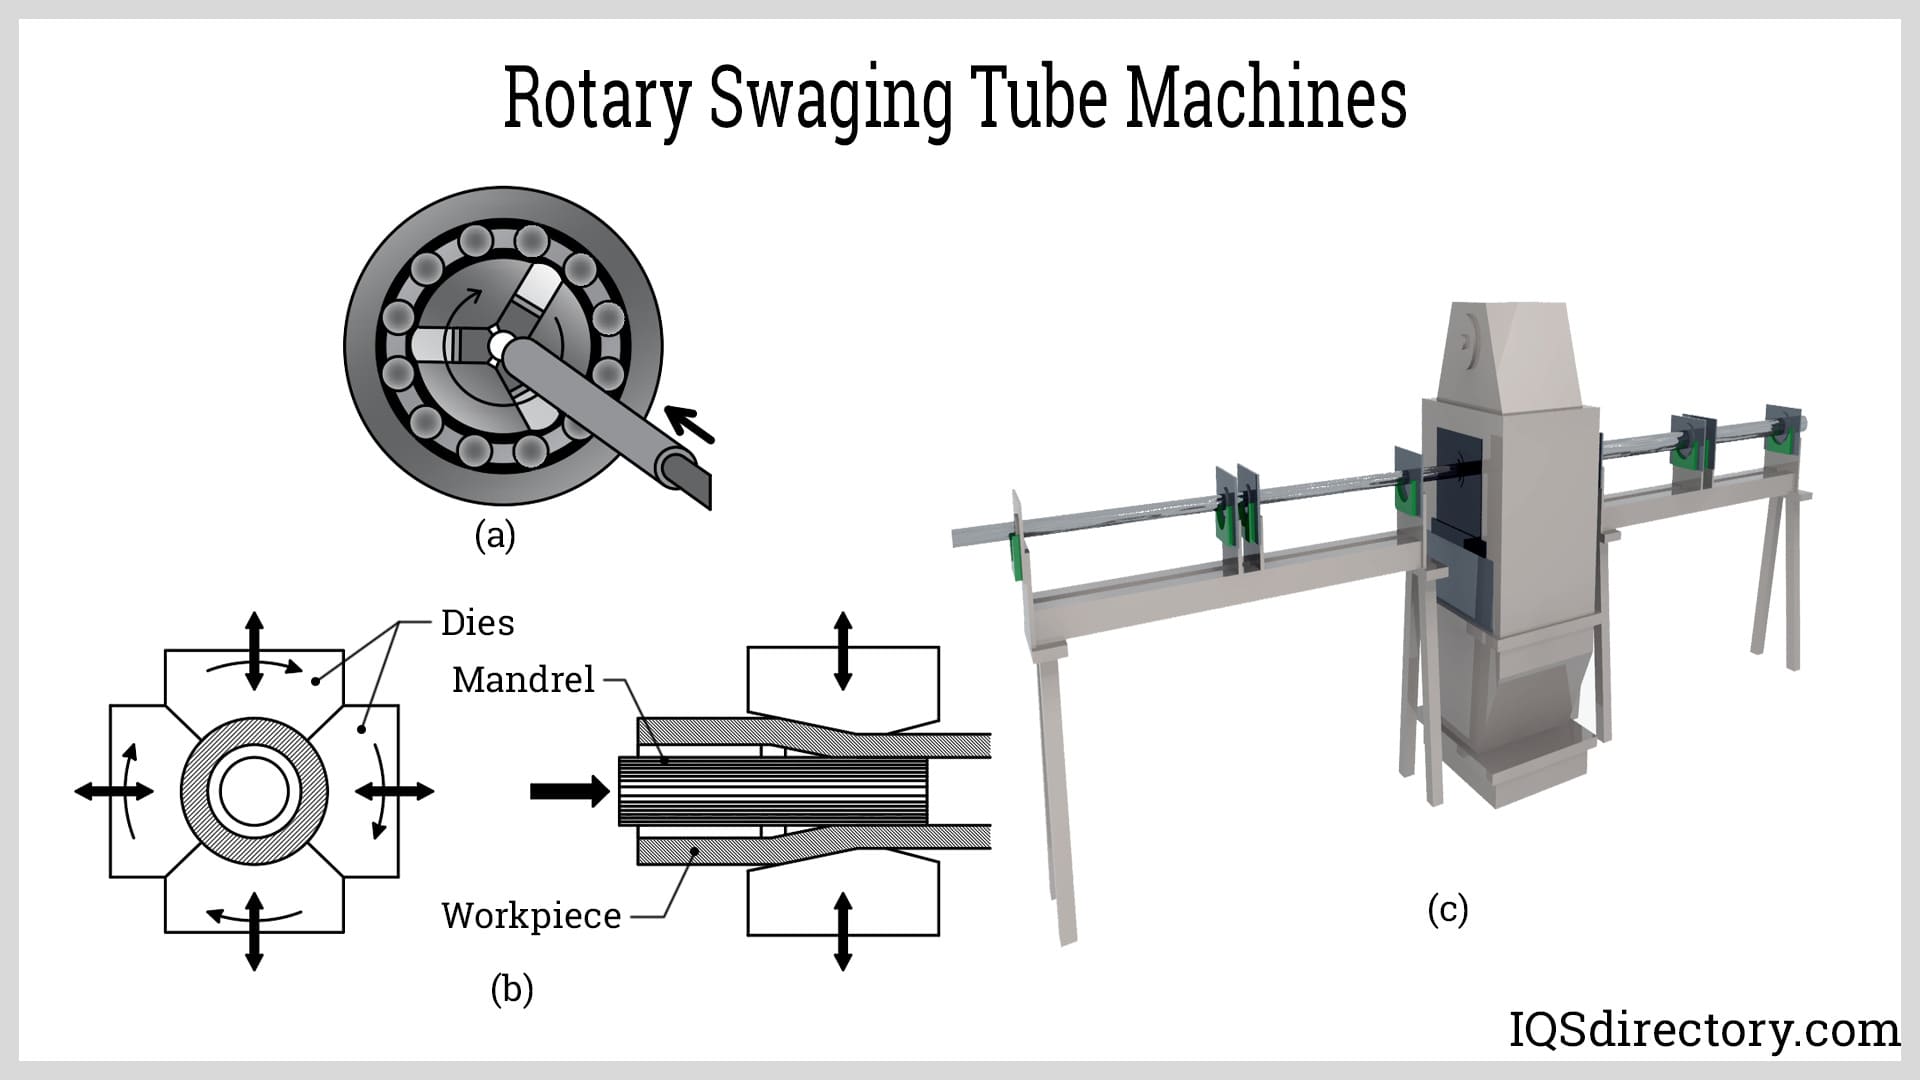 Rotary Swaging Tube Machines